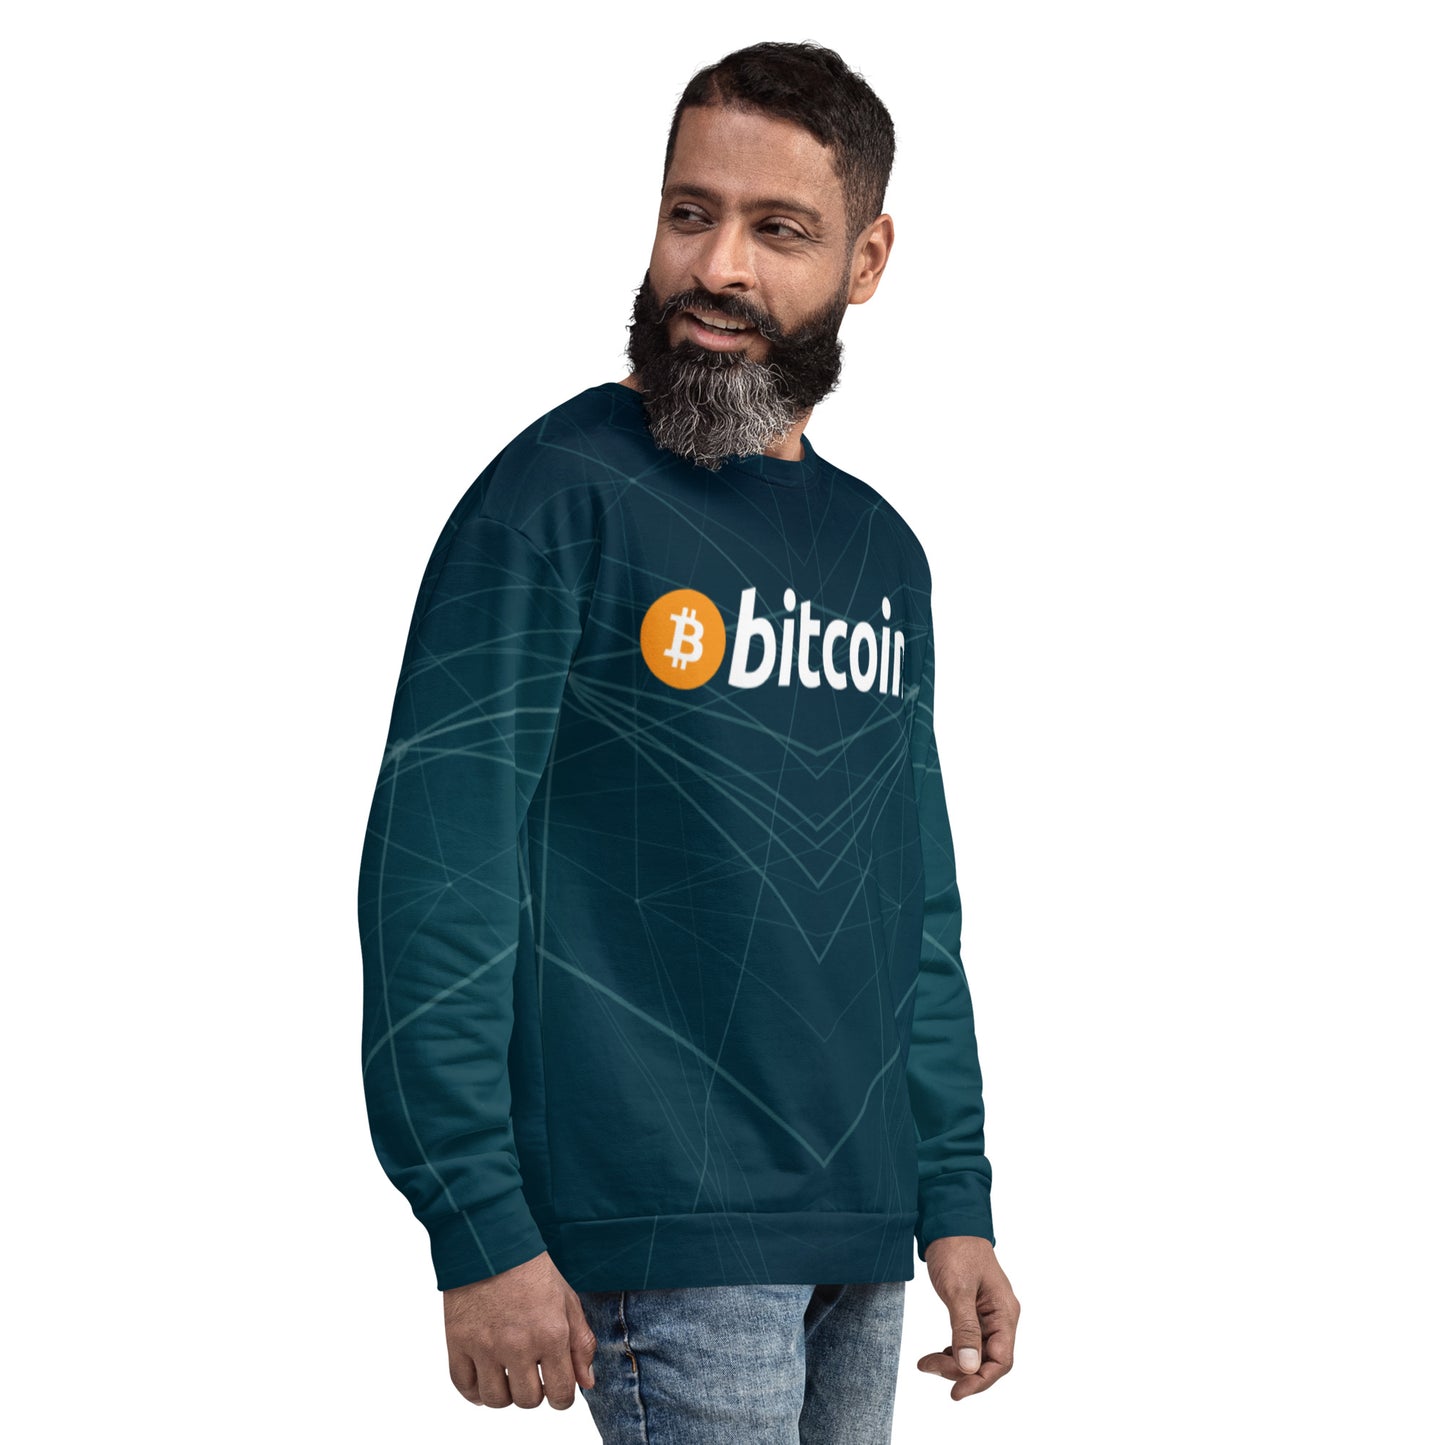 Bitcoin Minimal Sweatshirt